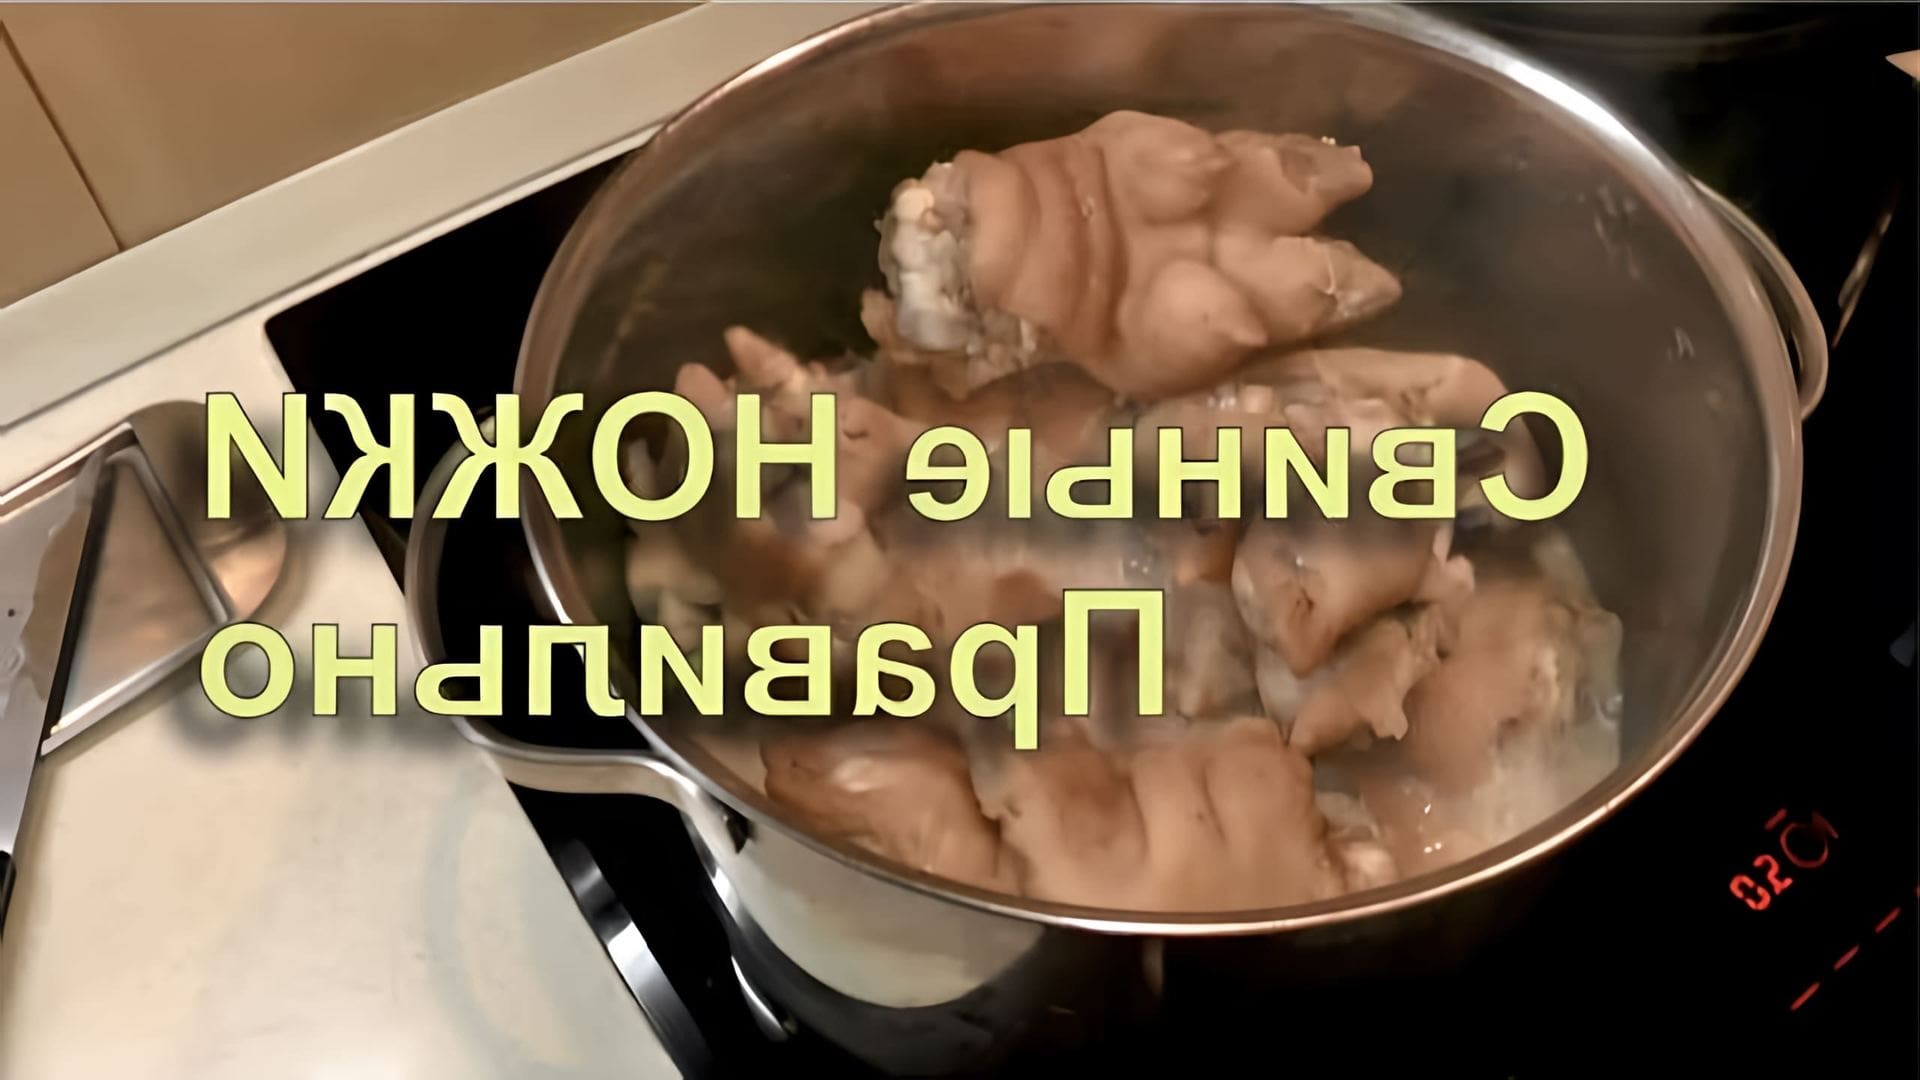 В данном видео демонстрируется процесс приготовления свиных ножек